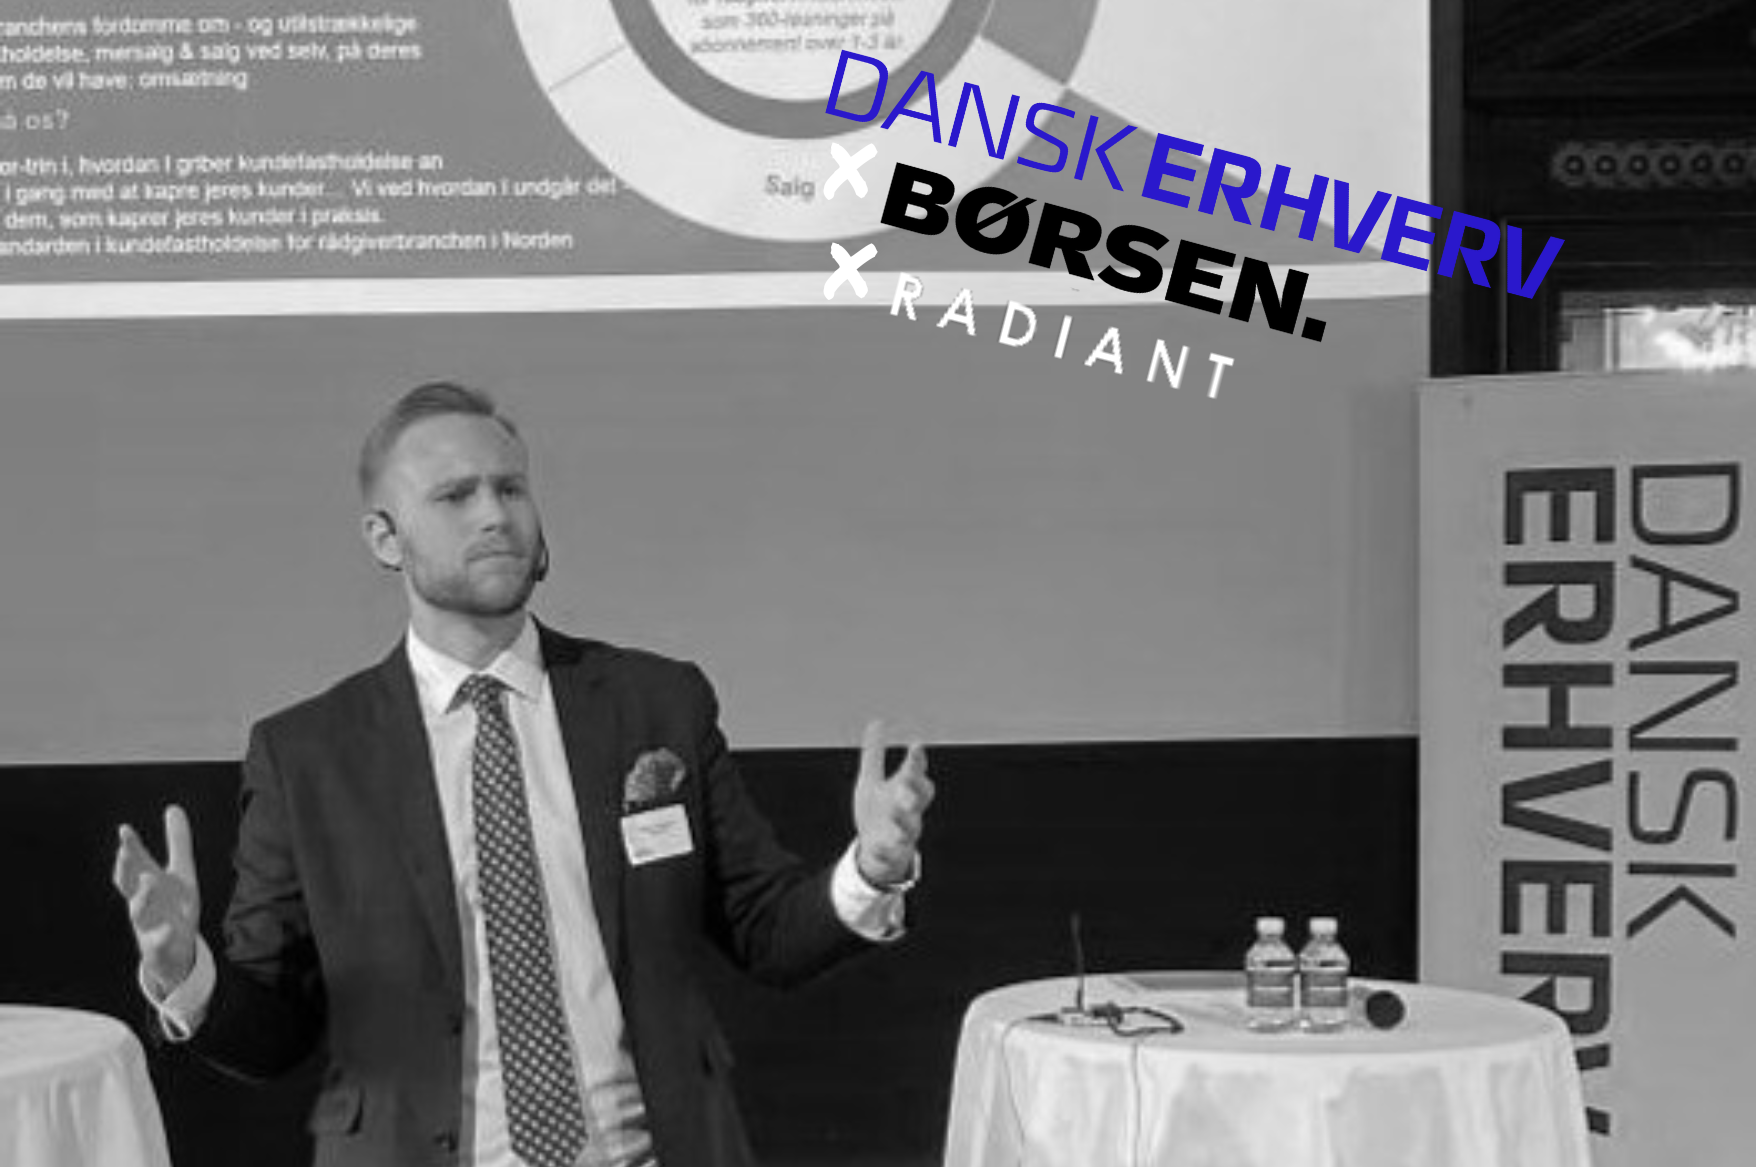 Radiant and Dansk Erhverv Seminar at Børsen: Digital B2B Sales